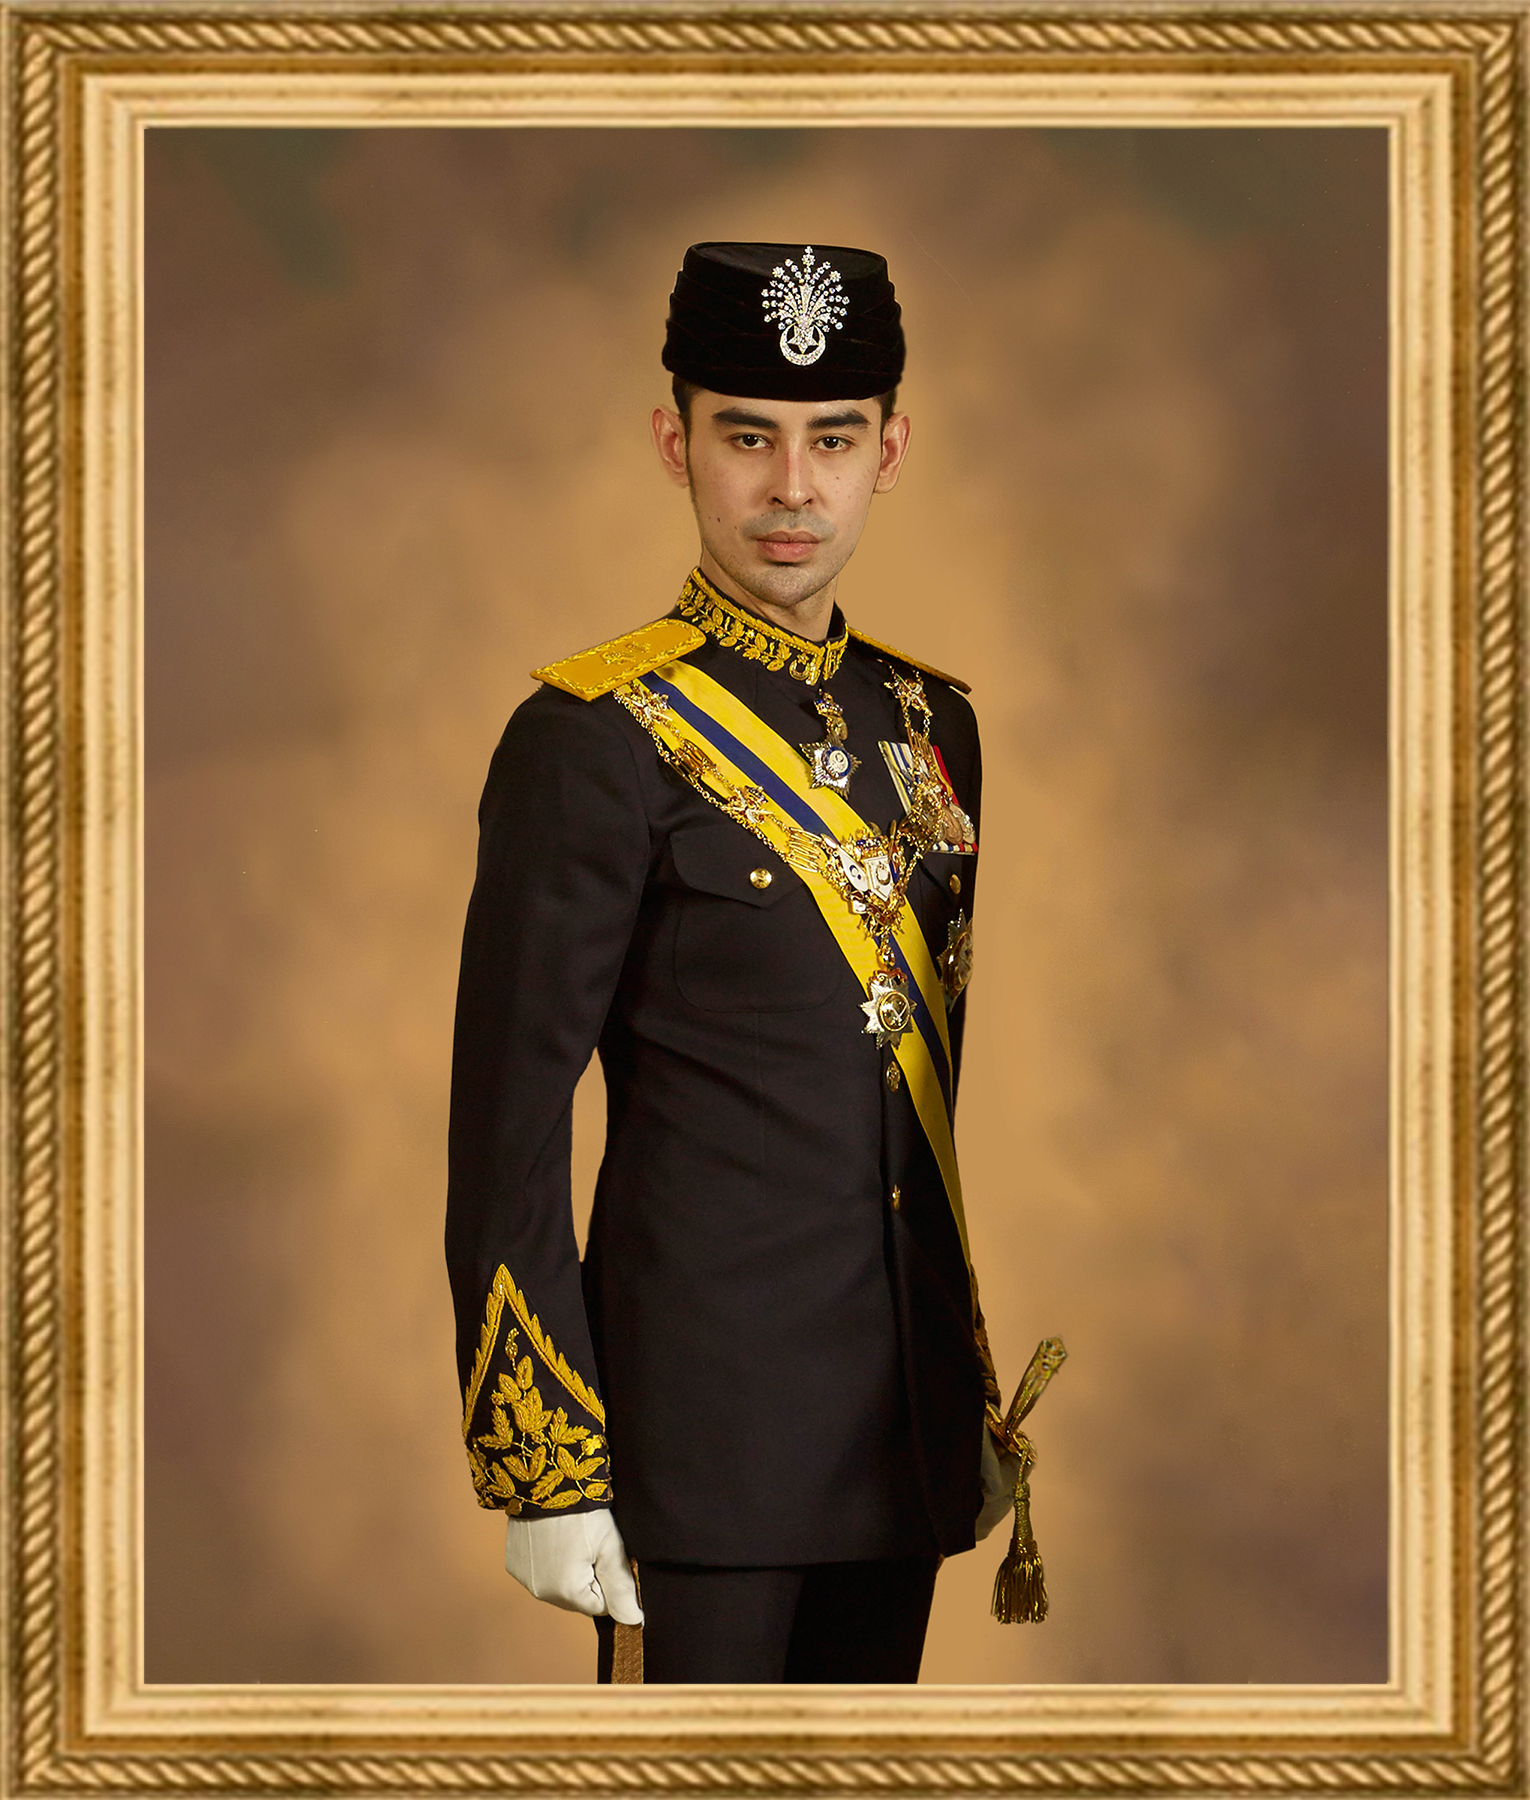 Yang Amat Mulia (His Highness) Tunku Abdul Jalil Iskandar Ibrahim Ismail Ibni Sultan Ibrahim Al-Haj, Tunku Laksamana Johor (Mangkat pada 5 Disember 2015)